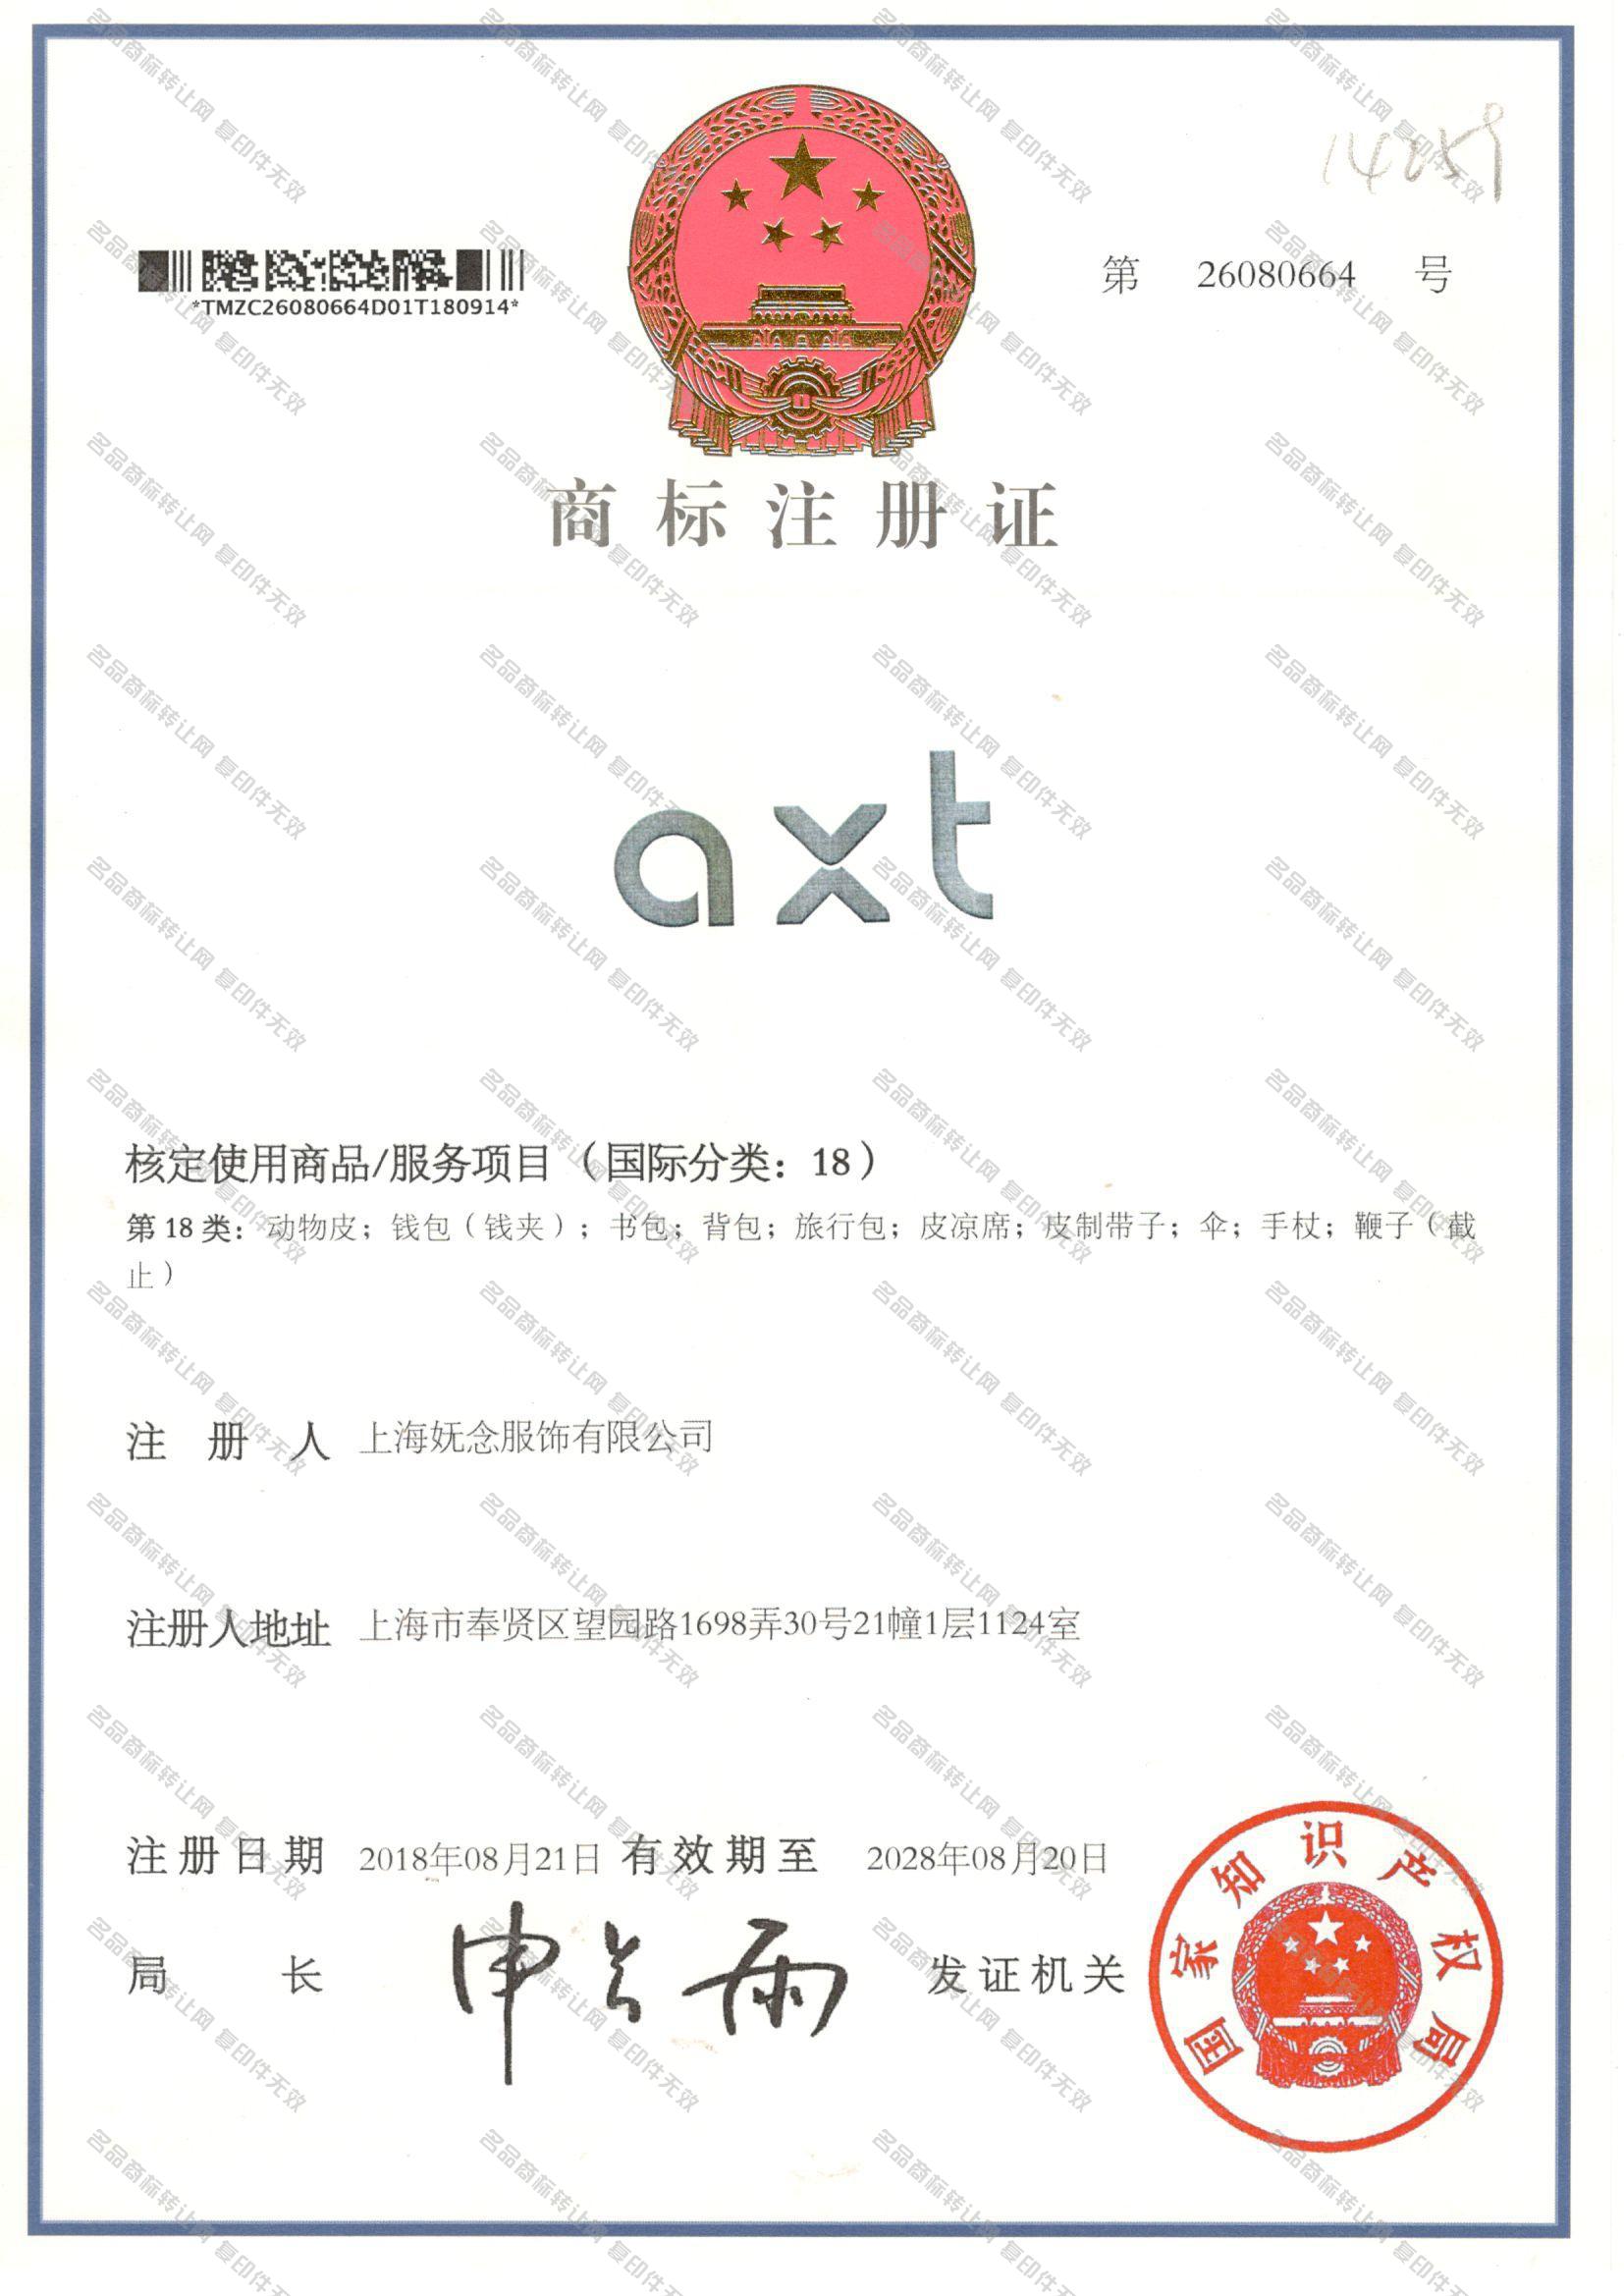 AXT注册证